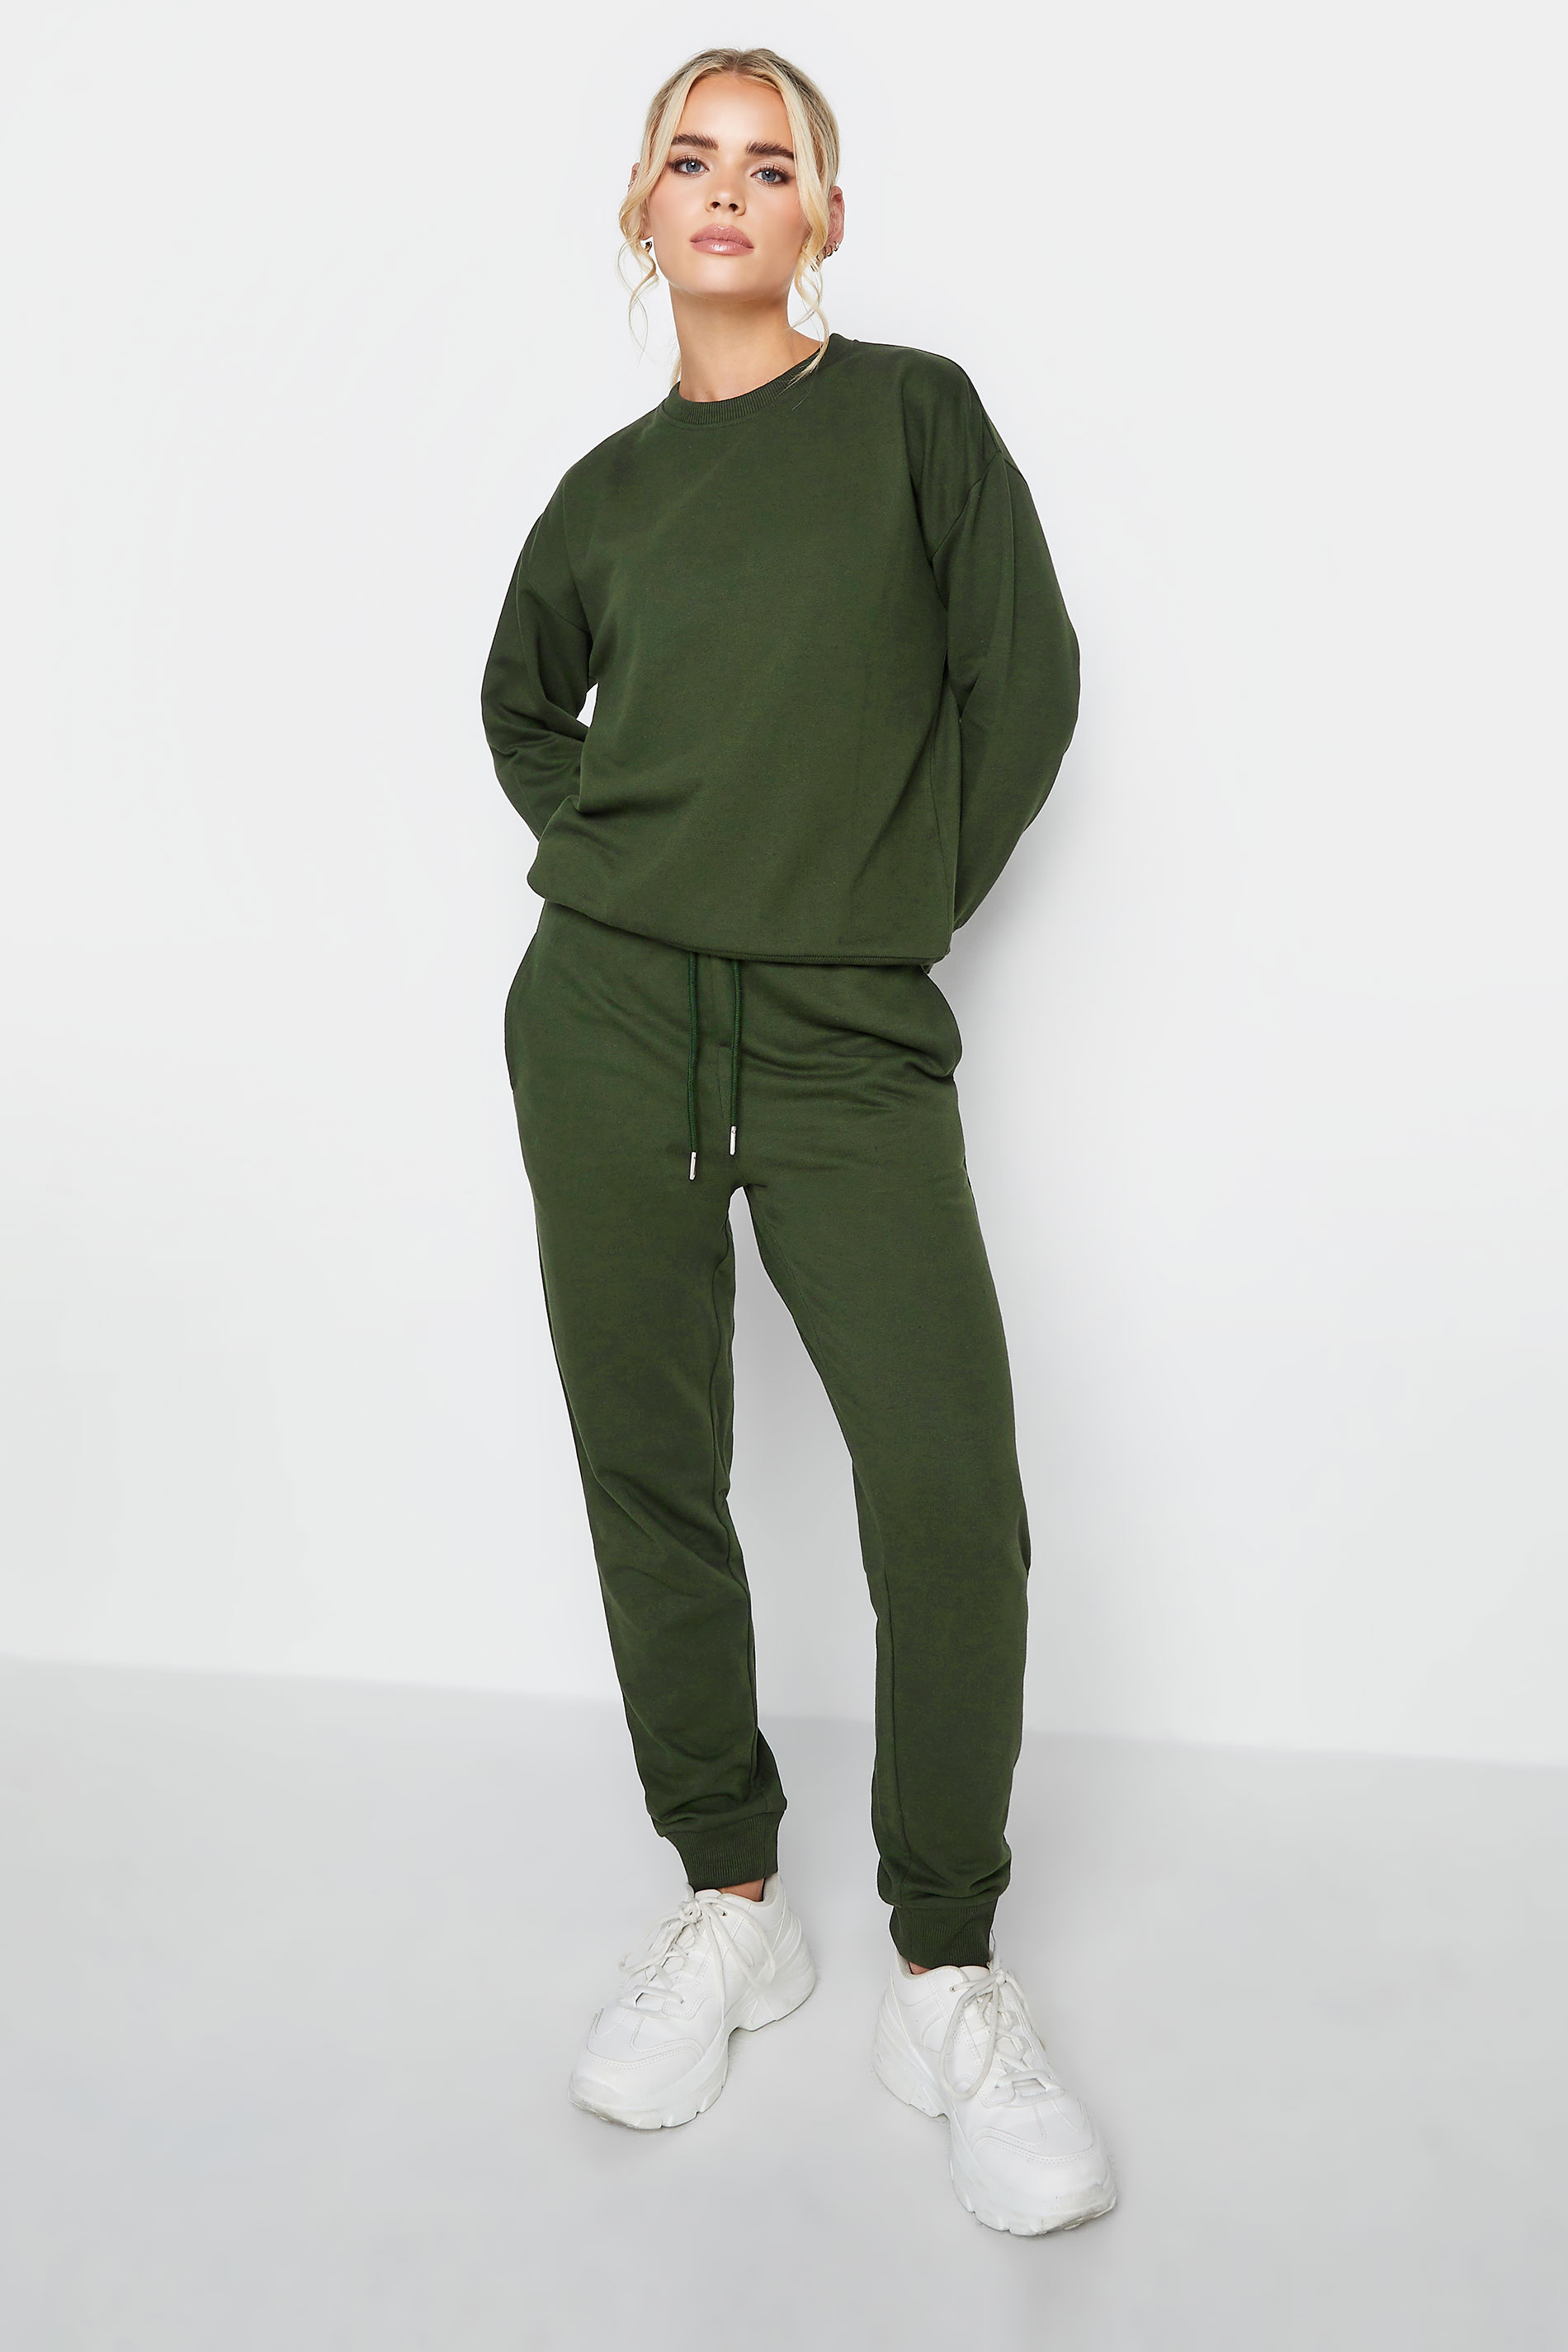 Petite Khaki Green Crew Neck Sweatshirt | PixieGirl 2